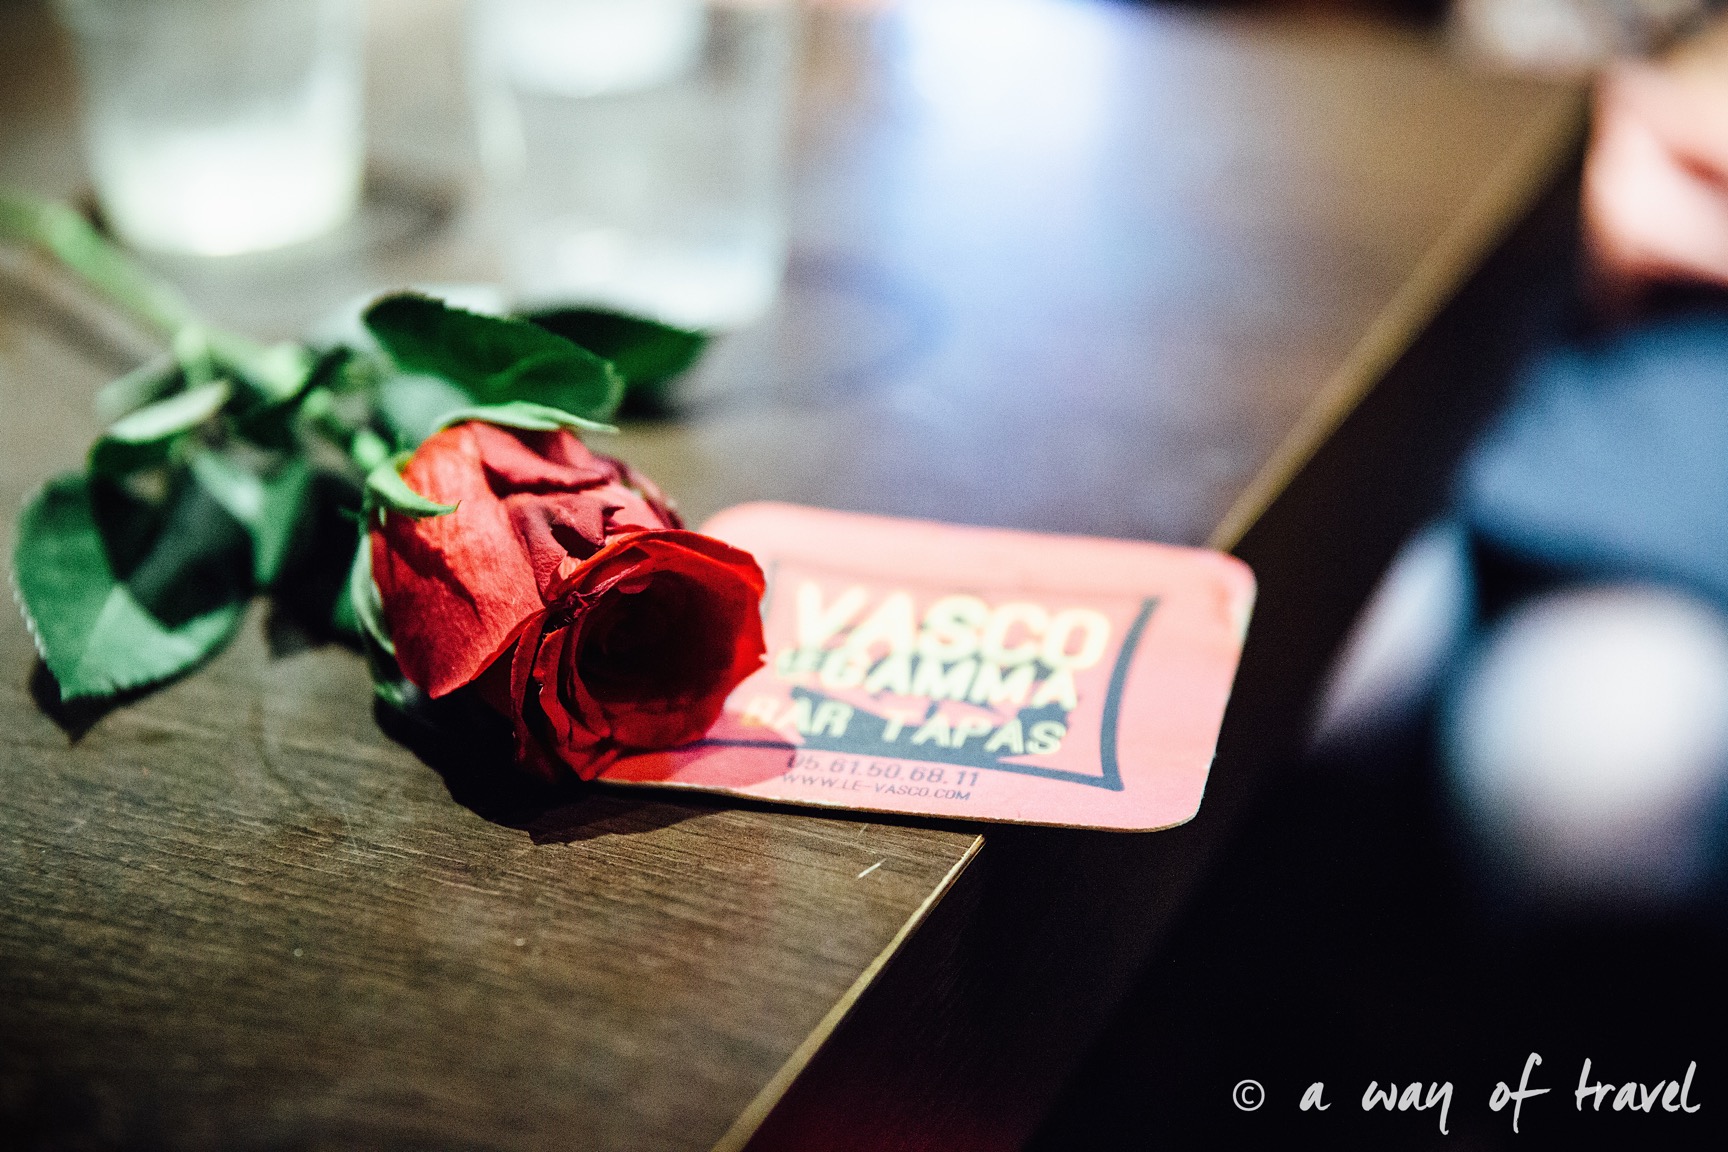 Vente aux enchères de célibataires au Vasco #6 !